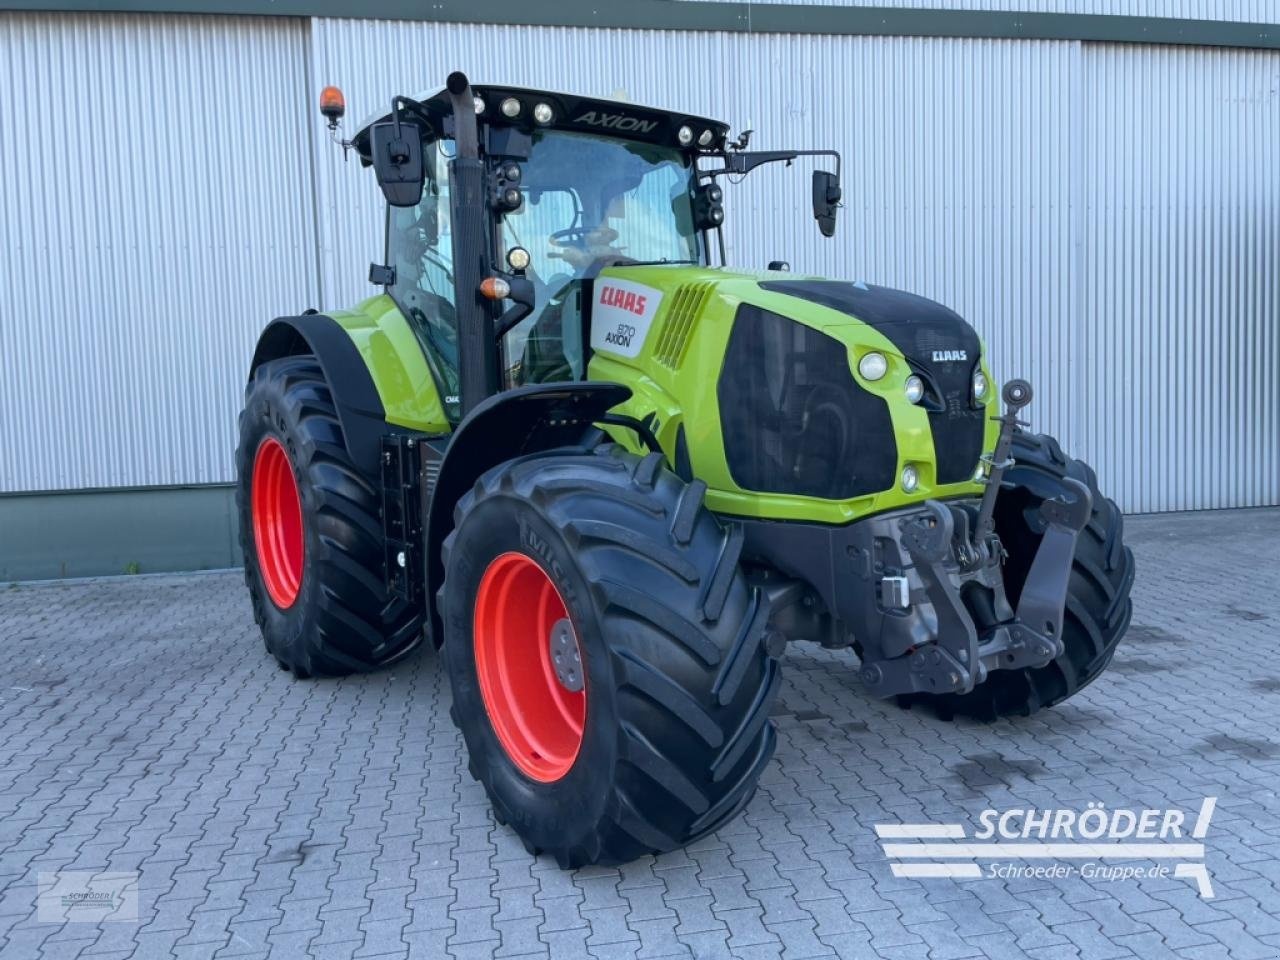 Claas Axion 870 CMATIC tractor €66,885